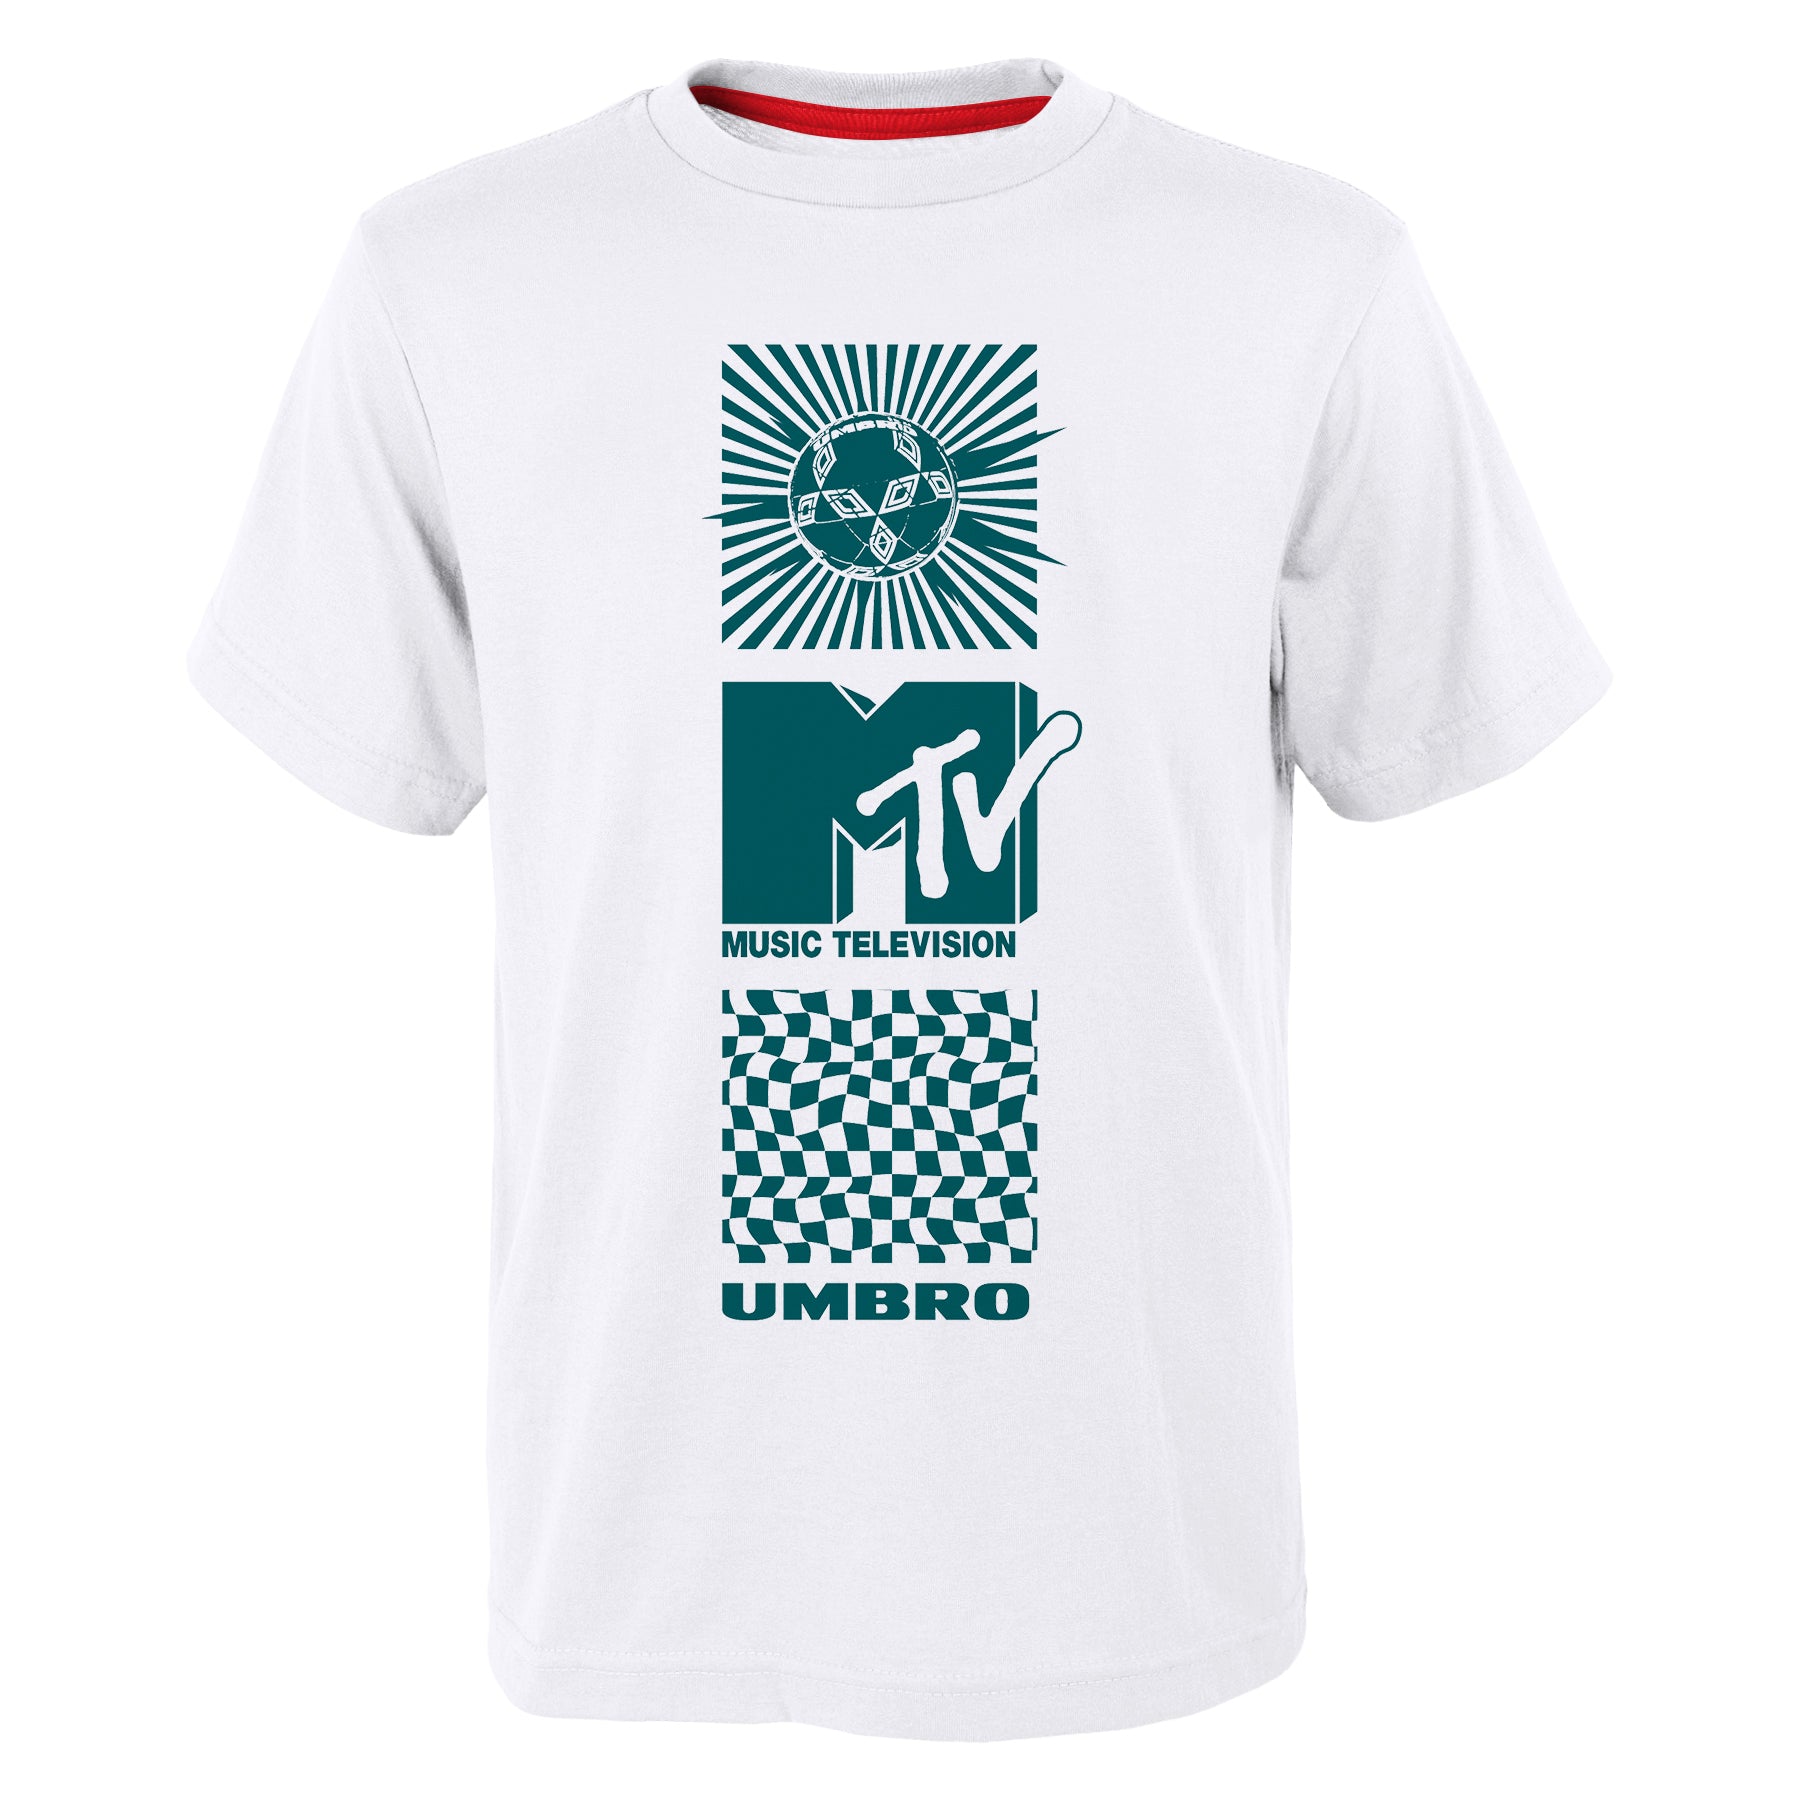 UMBRO x MTV GRAPHIC TEE